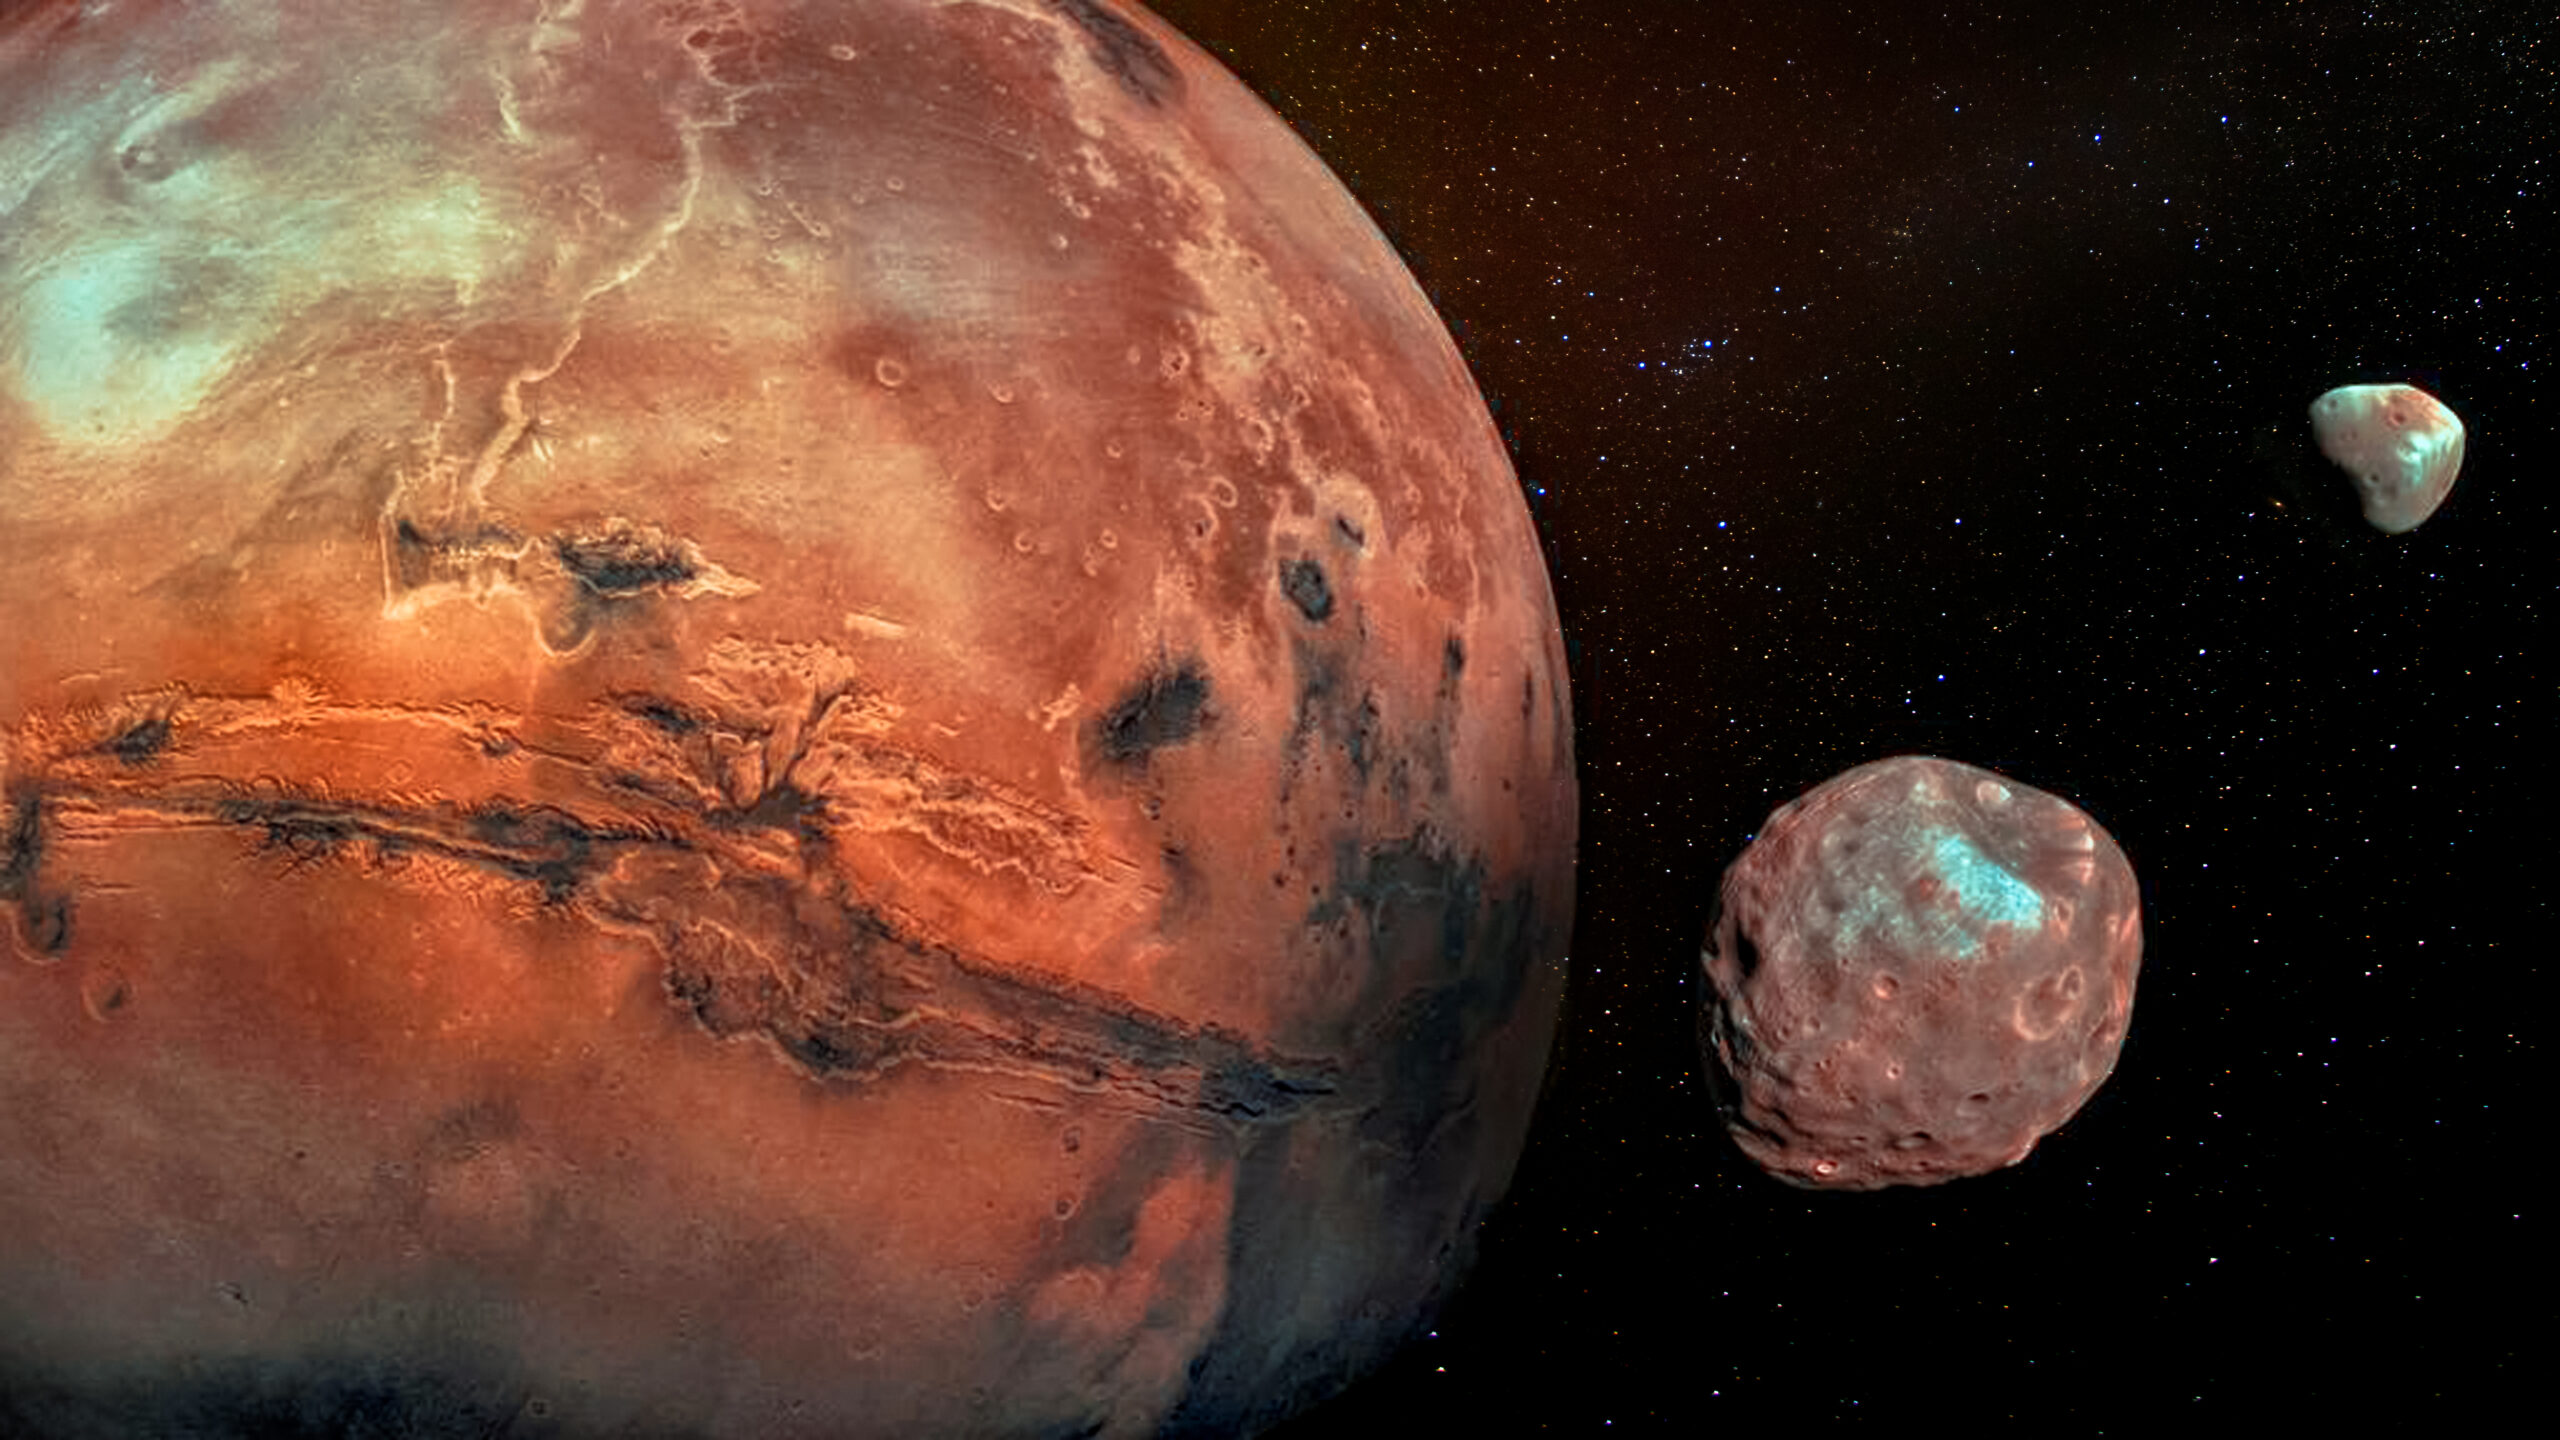 Страх и ужас спутники какой планеты. Спутники Марса Фобос и Деймос. Марс Планета спутники Деймос. Марс Фобос Деймос Планета. Луны Марса Деймос и Фобос.